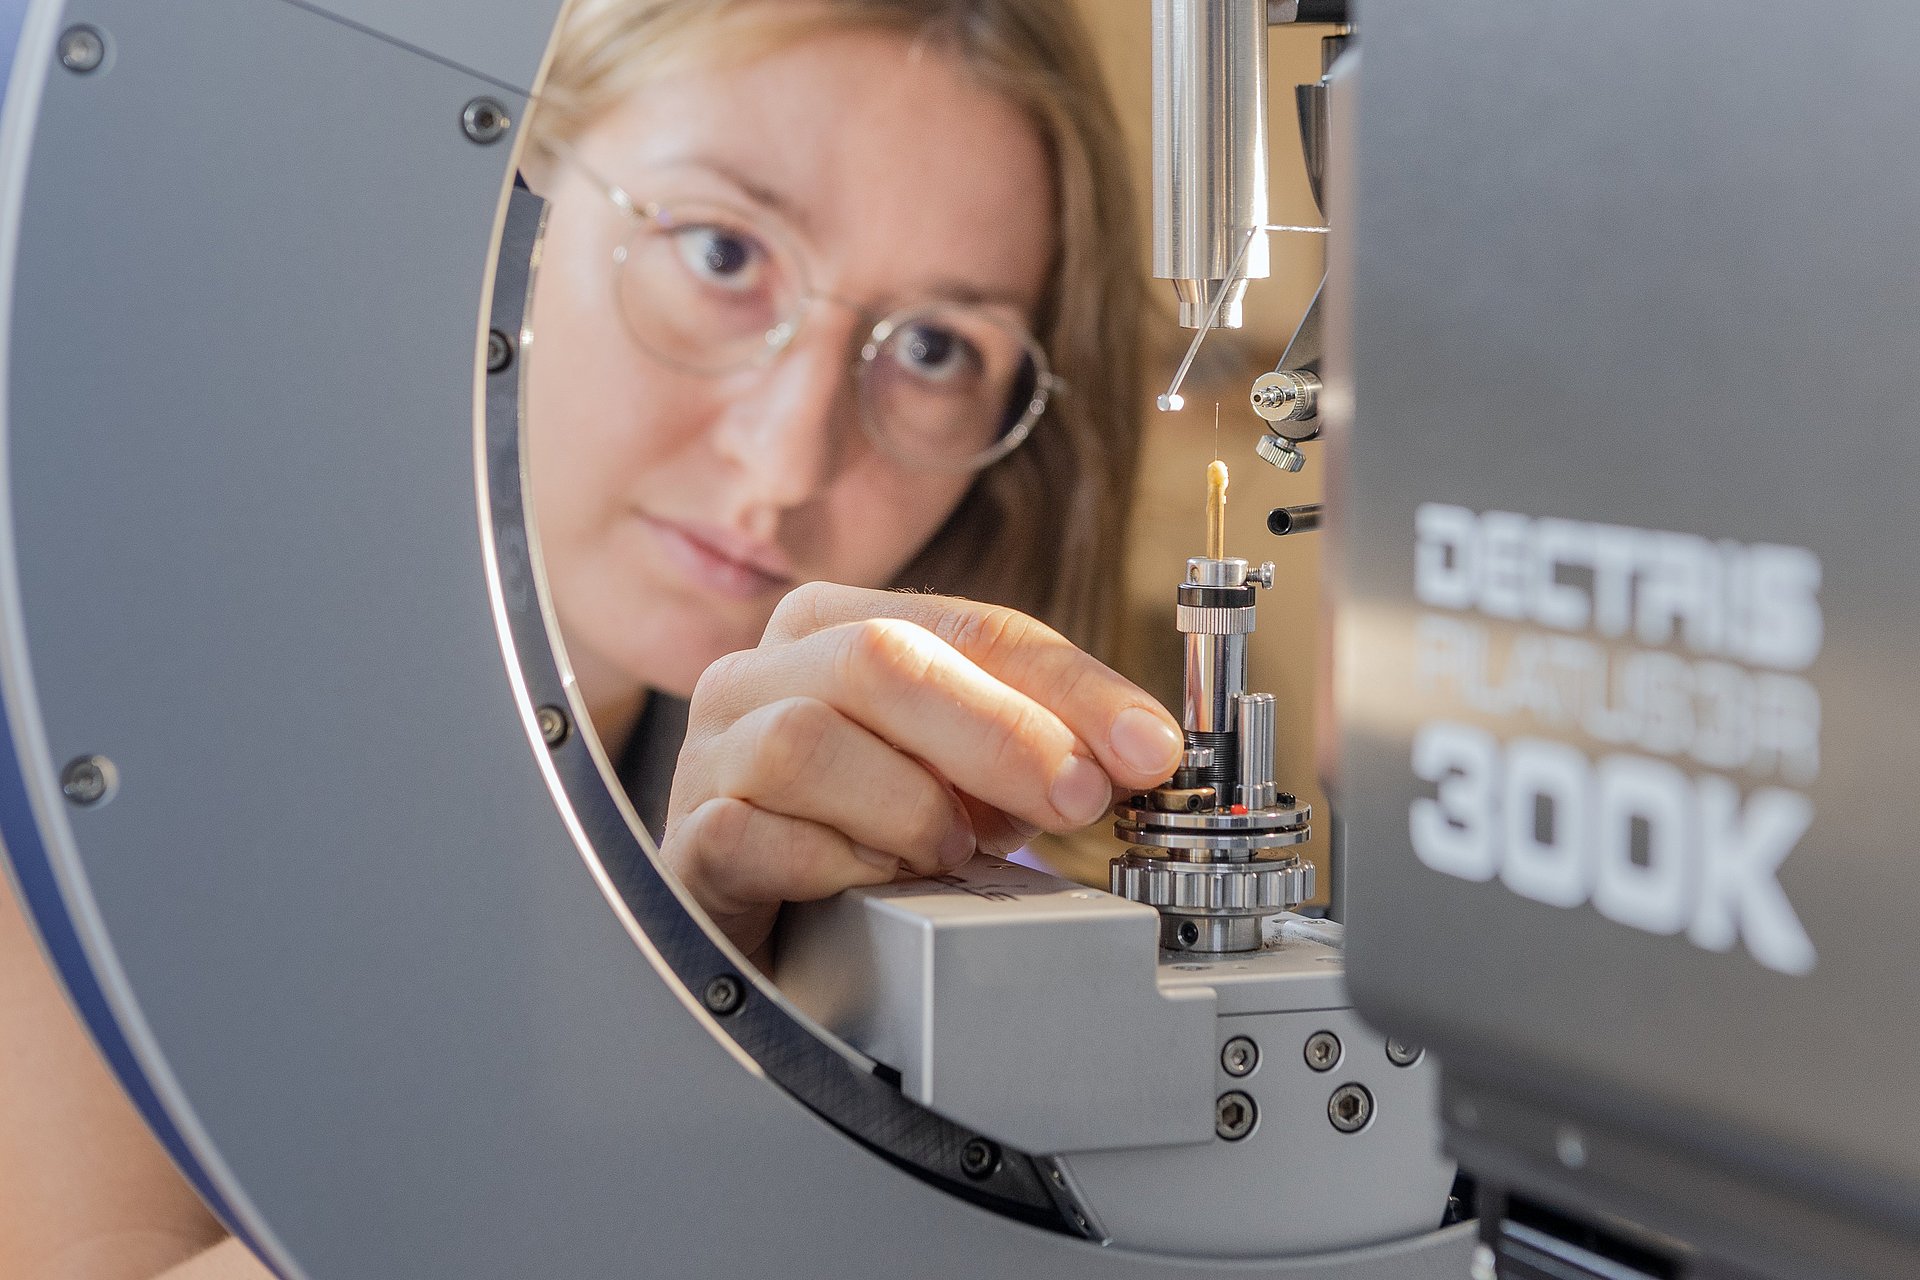 Anna Vogel beim Montieren eines Einkristalls auf dem Einkristalldiffraktometer. Vor ihr ist eine Glaskapillare zu sehen, auf der sich ein Kristall von etwa 0,2 mm Durchmesser befindet. Mit geeigneter Messstrahlung werden Daten aufgenommen, um hieraus die Struktur zu bestimmen.